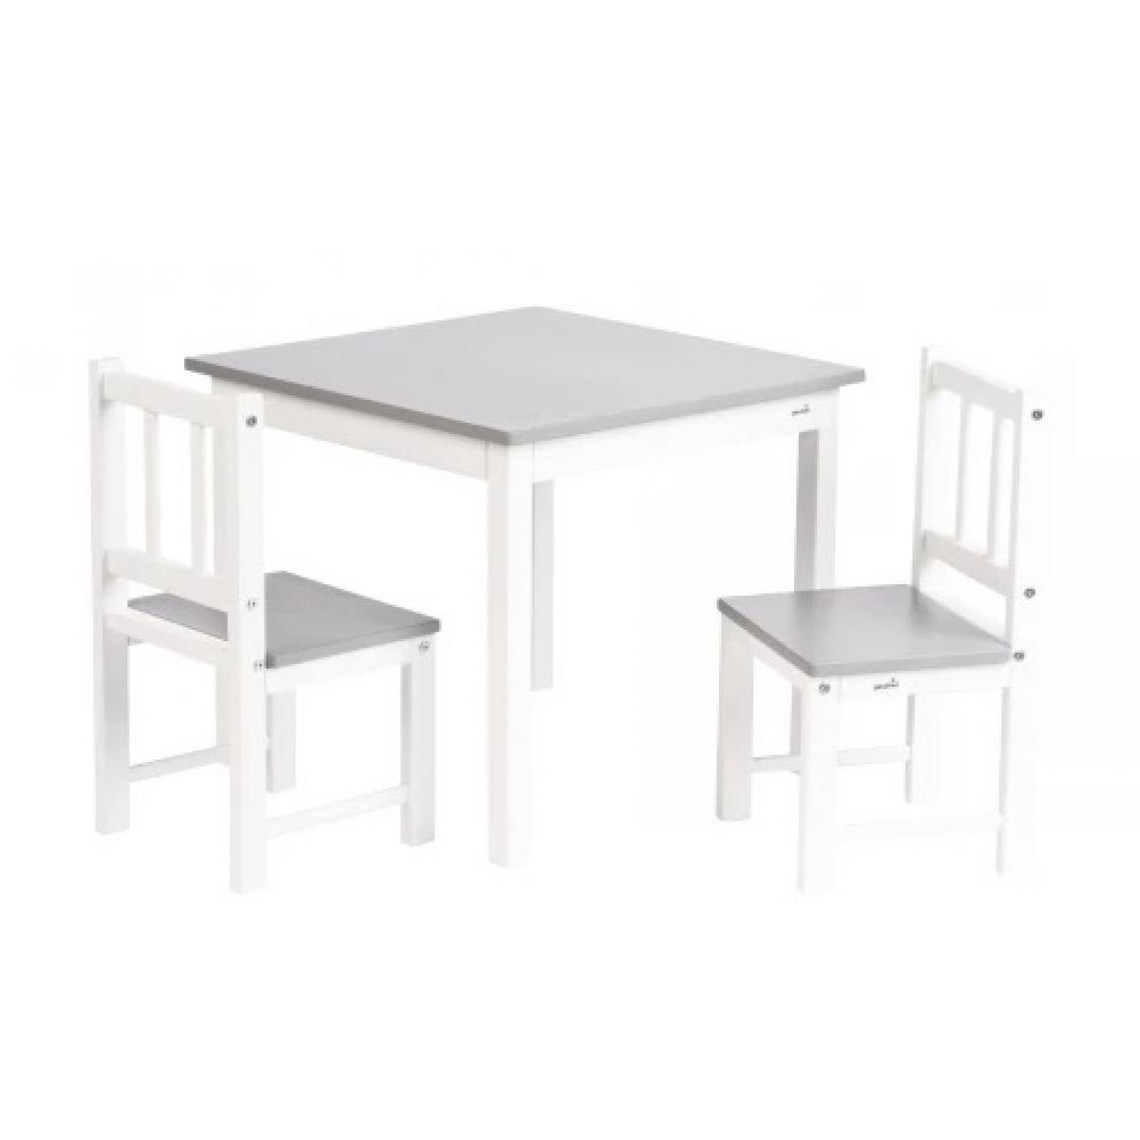 Geuther Geuther Meubles d activite en Hevea 2 chaises et une table Couleur Blanc Naturel